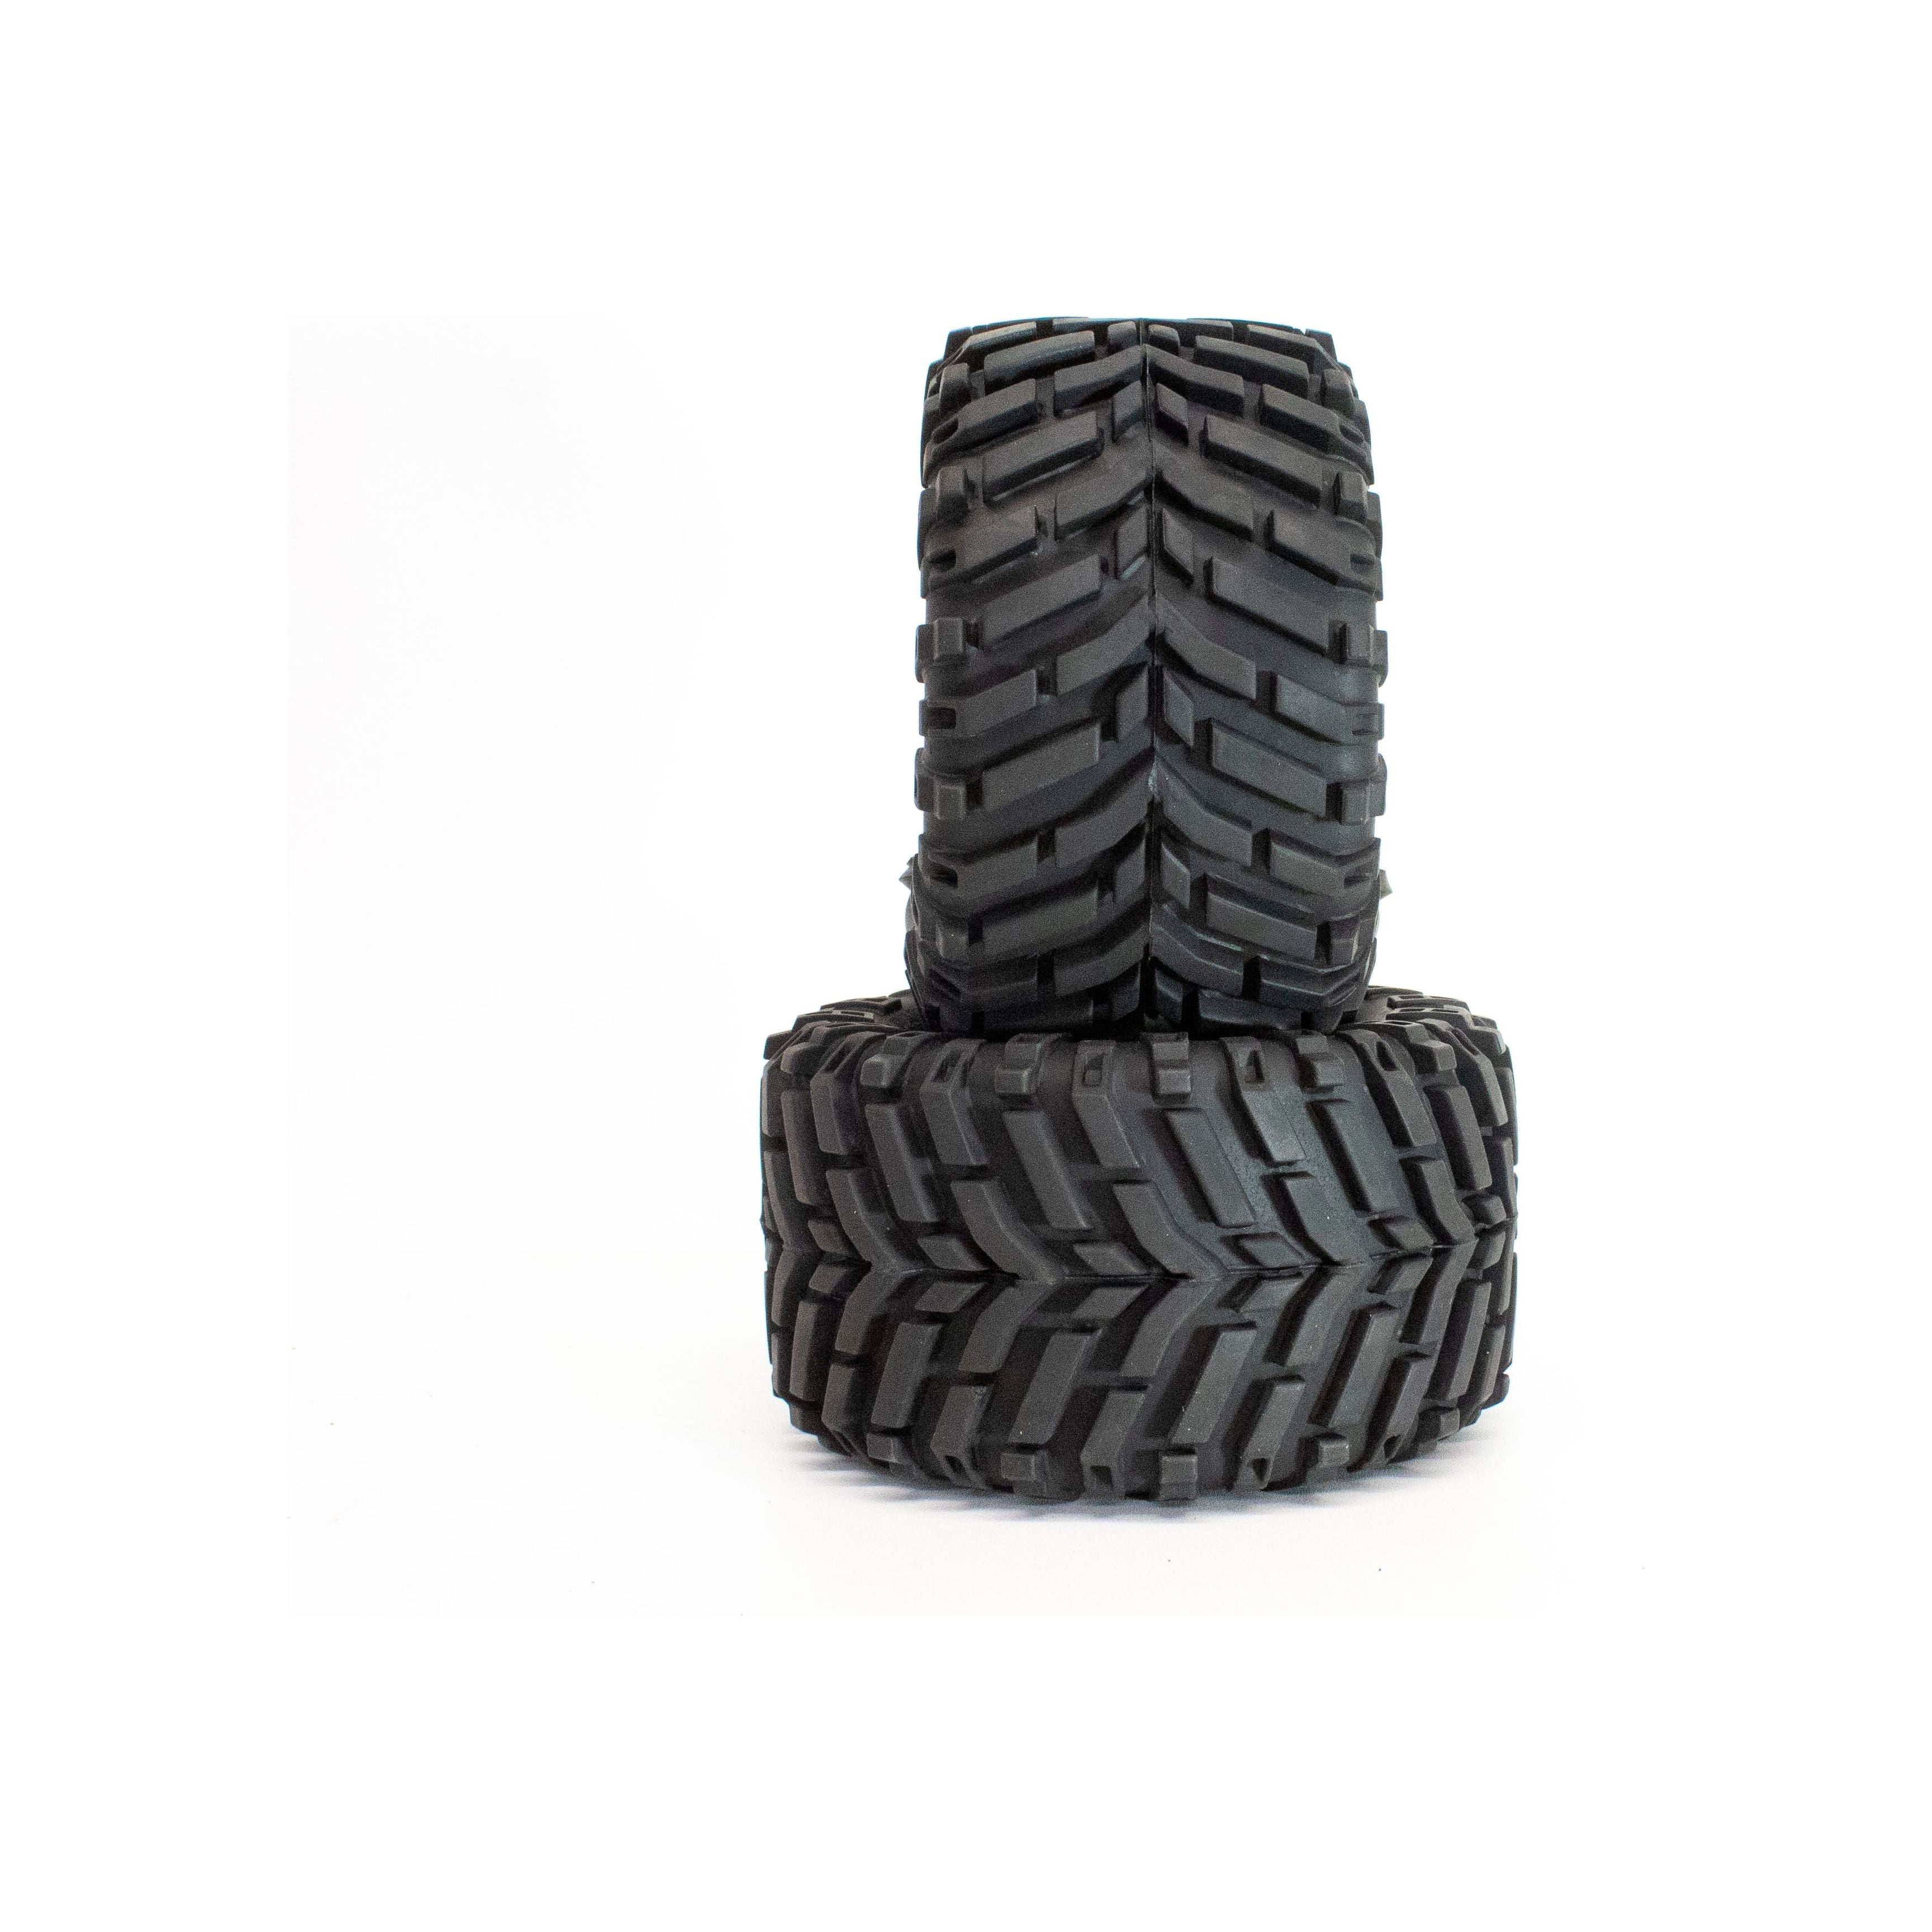 IMEX 2.8 Baja Wide Tires (1 Pair)